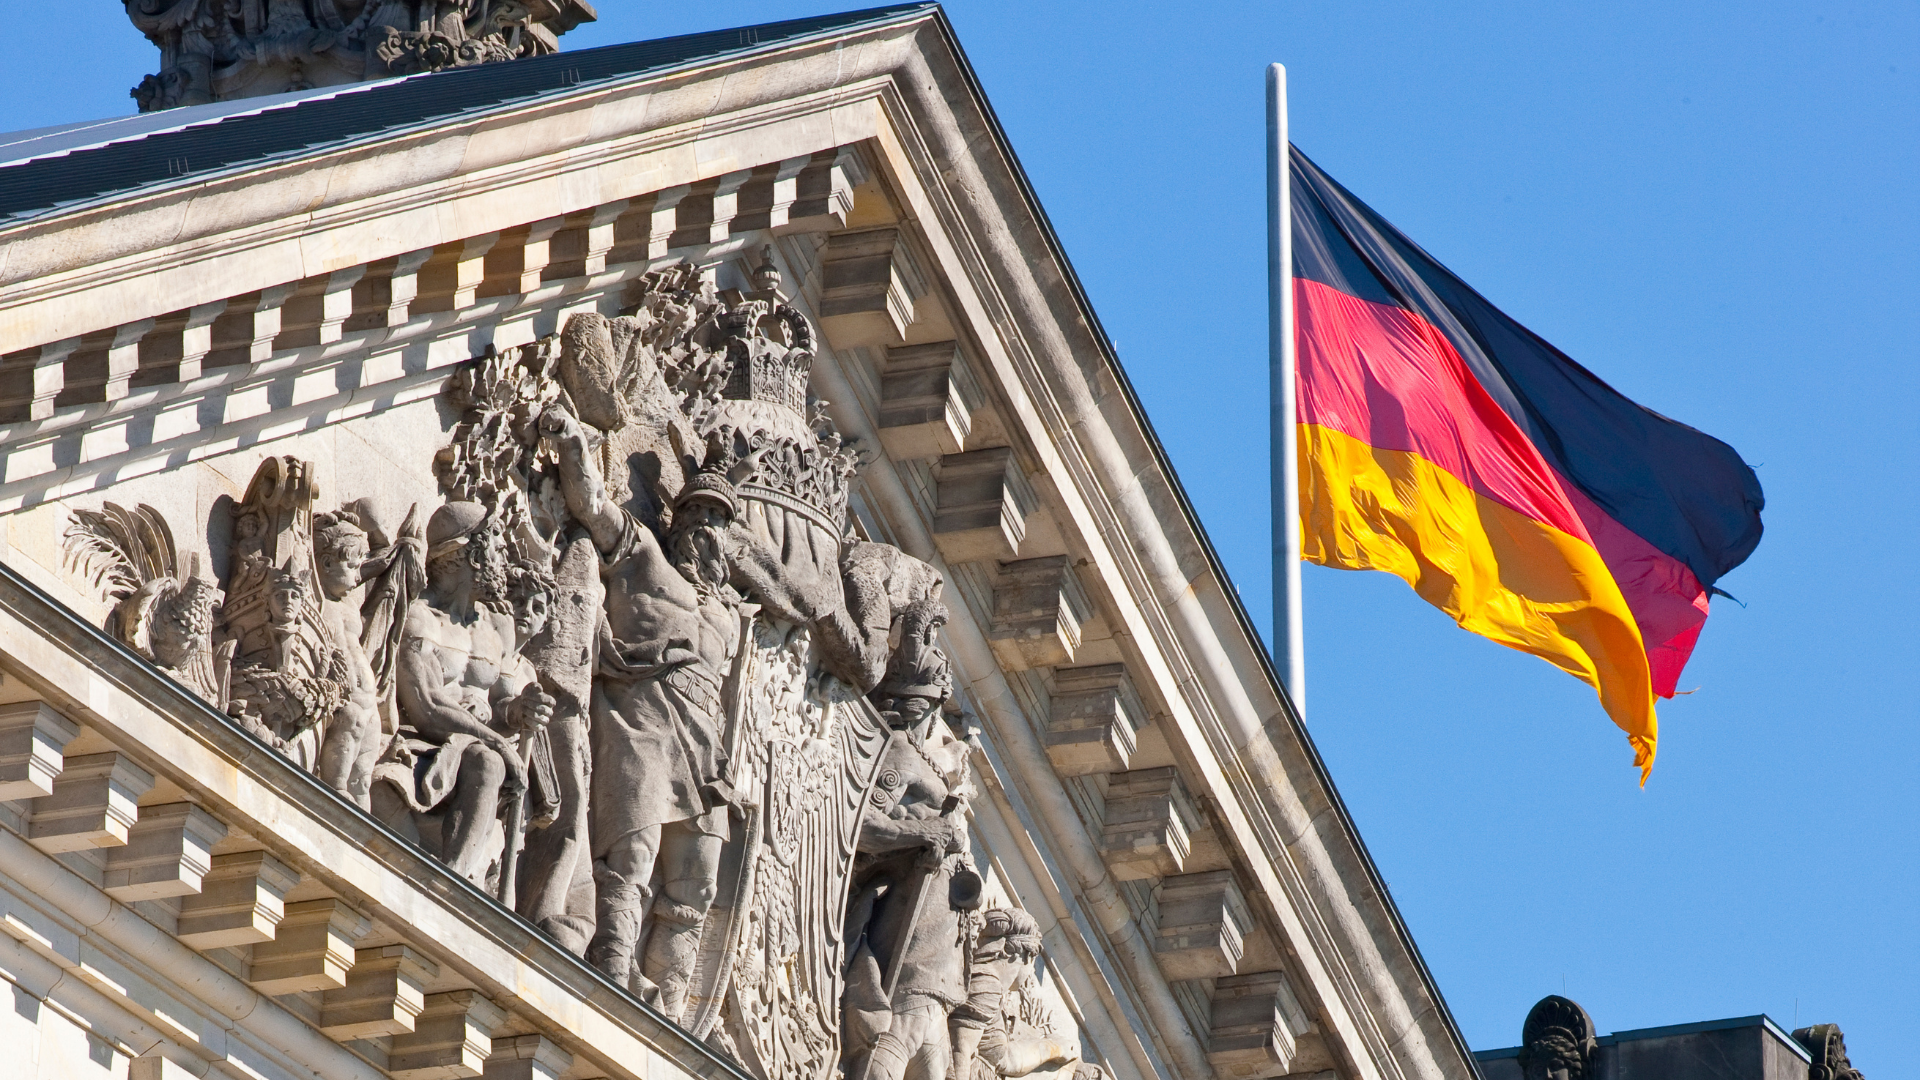 Bedaffair groeit naar Duitsland met de Nederlandse Ambassade